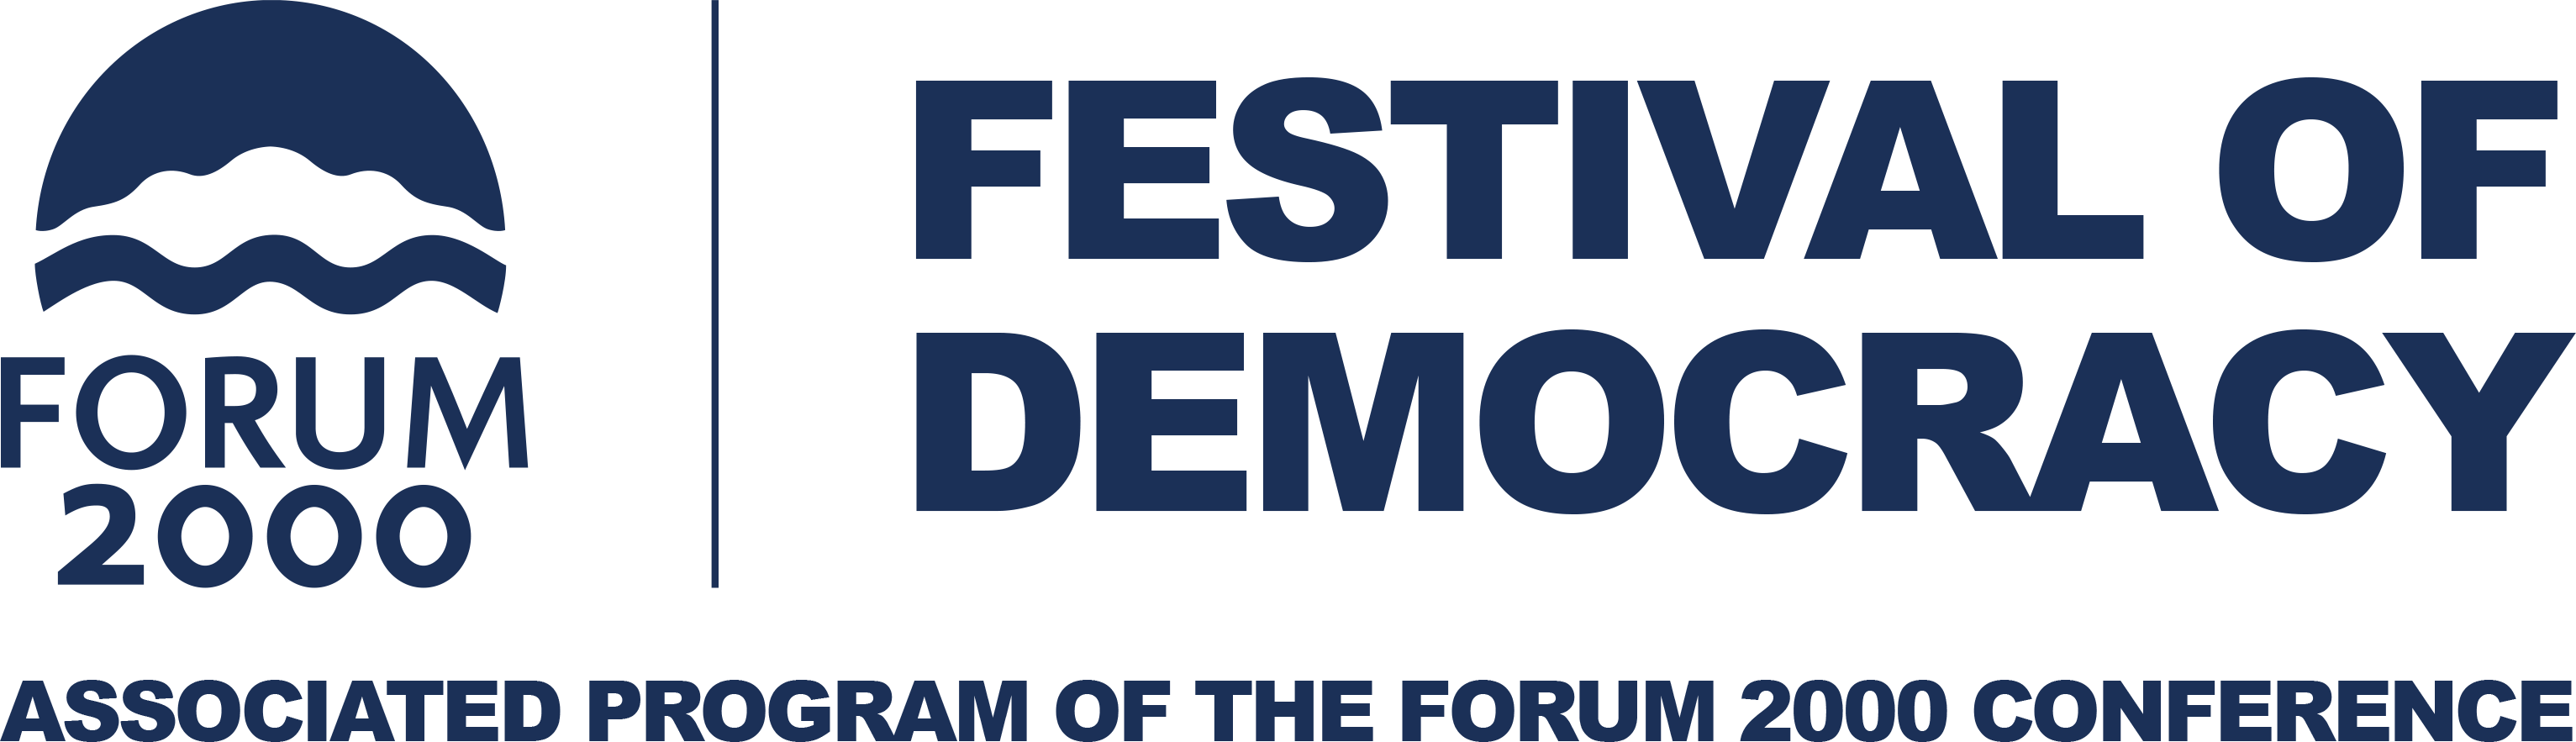 Festival demokracie